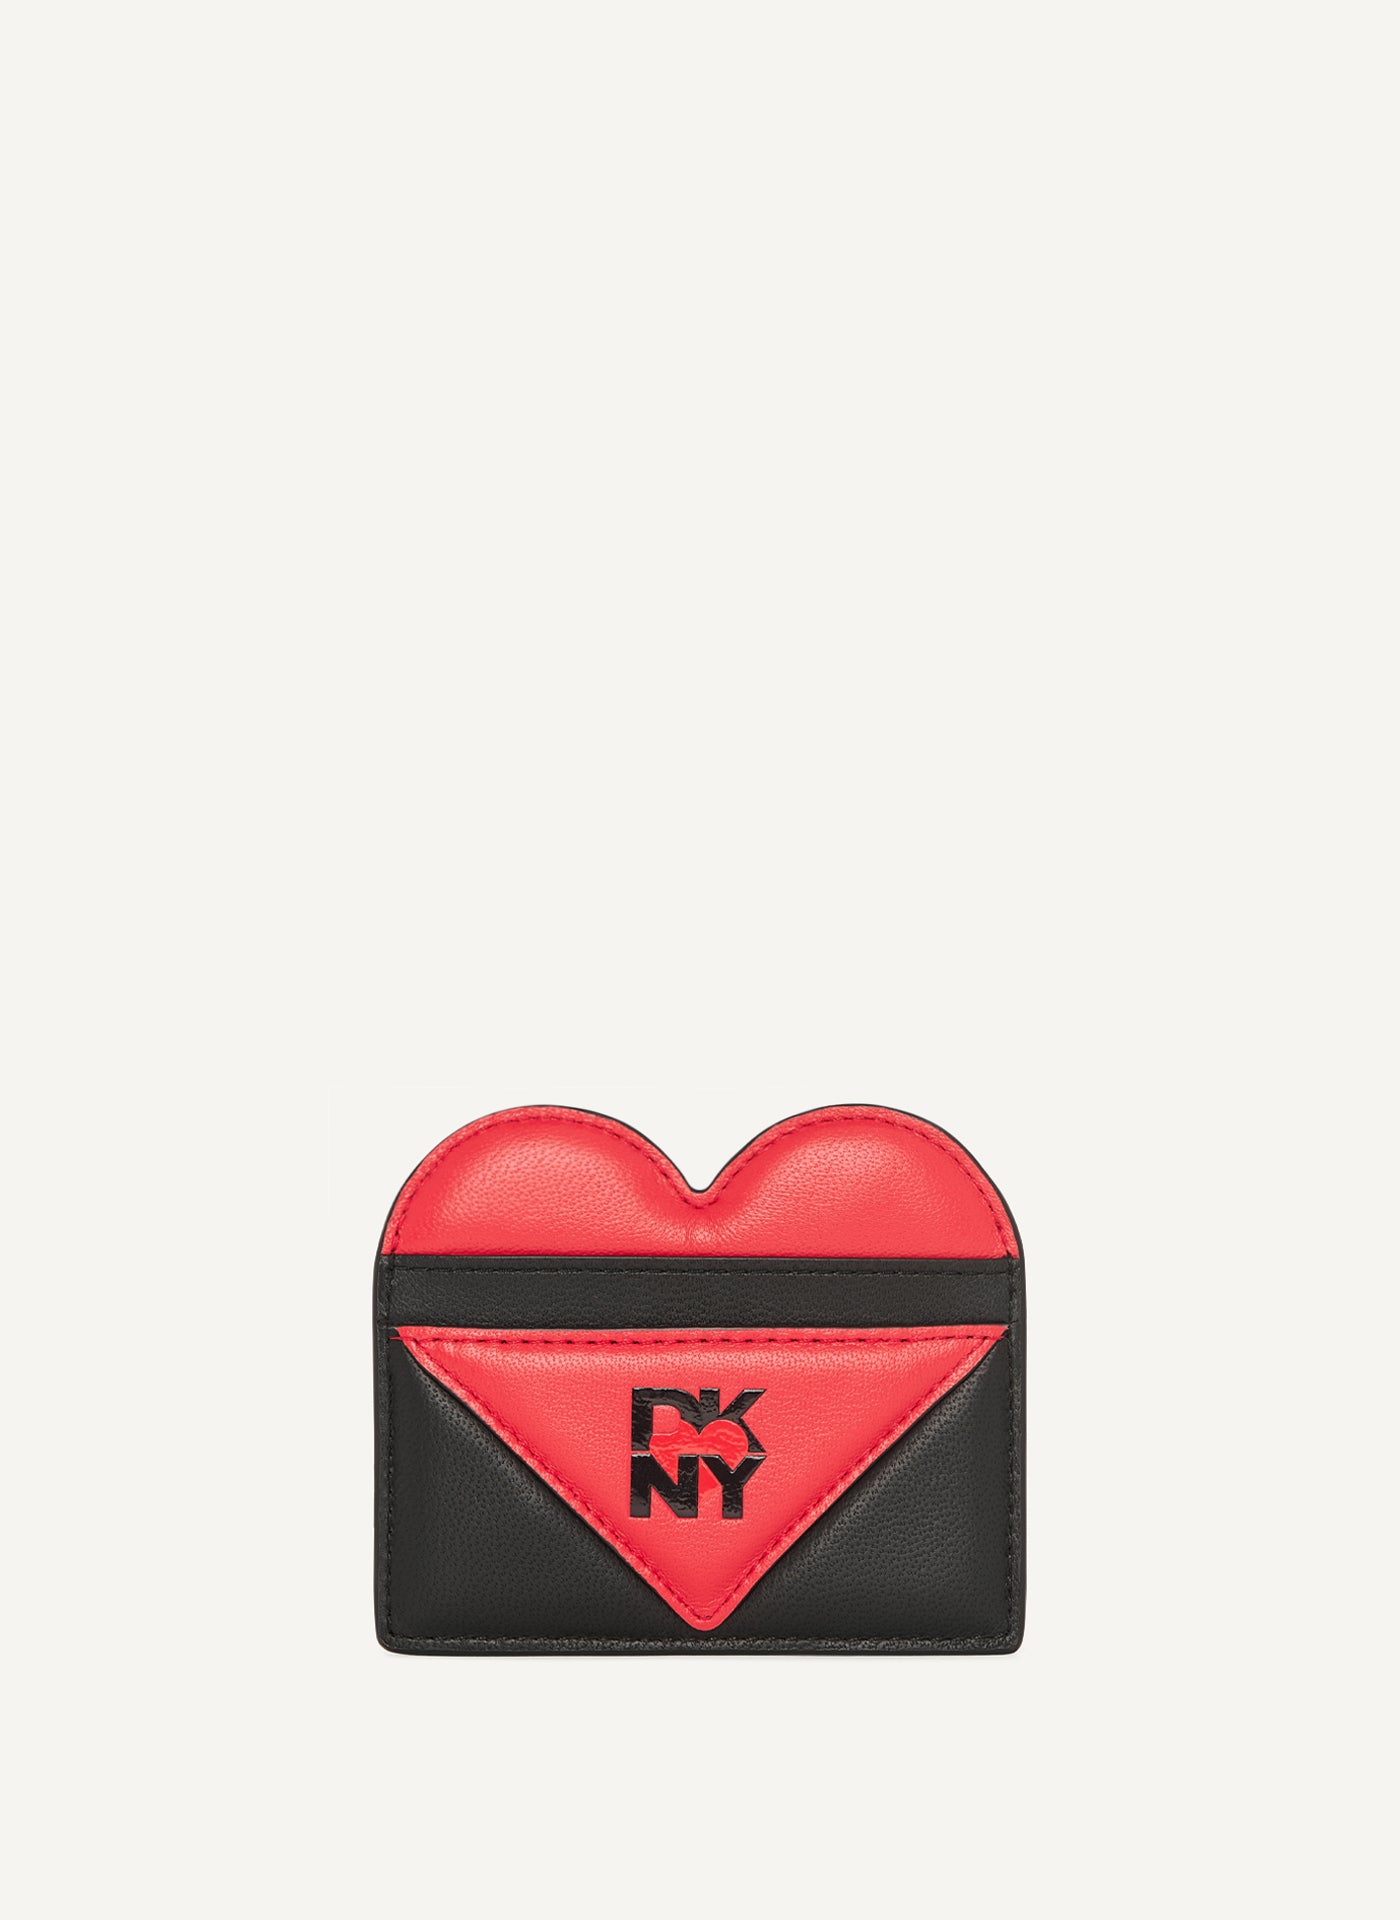 DKNY HEART OF NY CARD HOLDER,Black